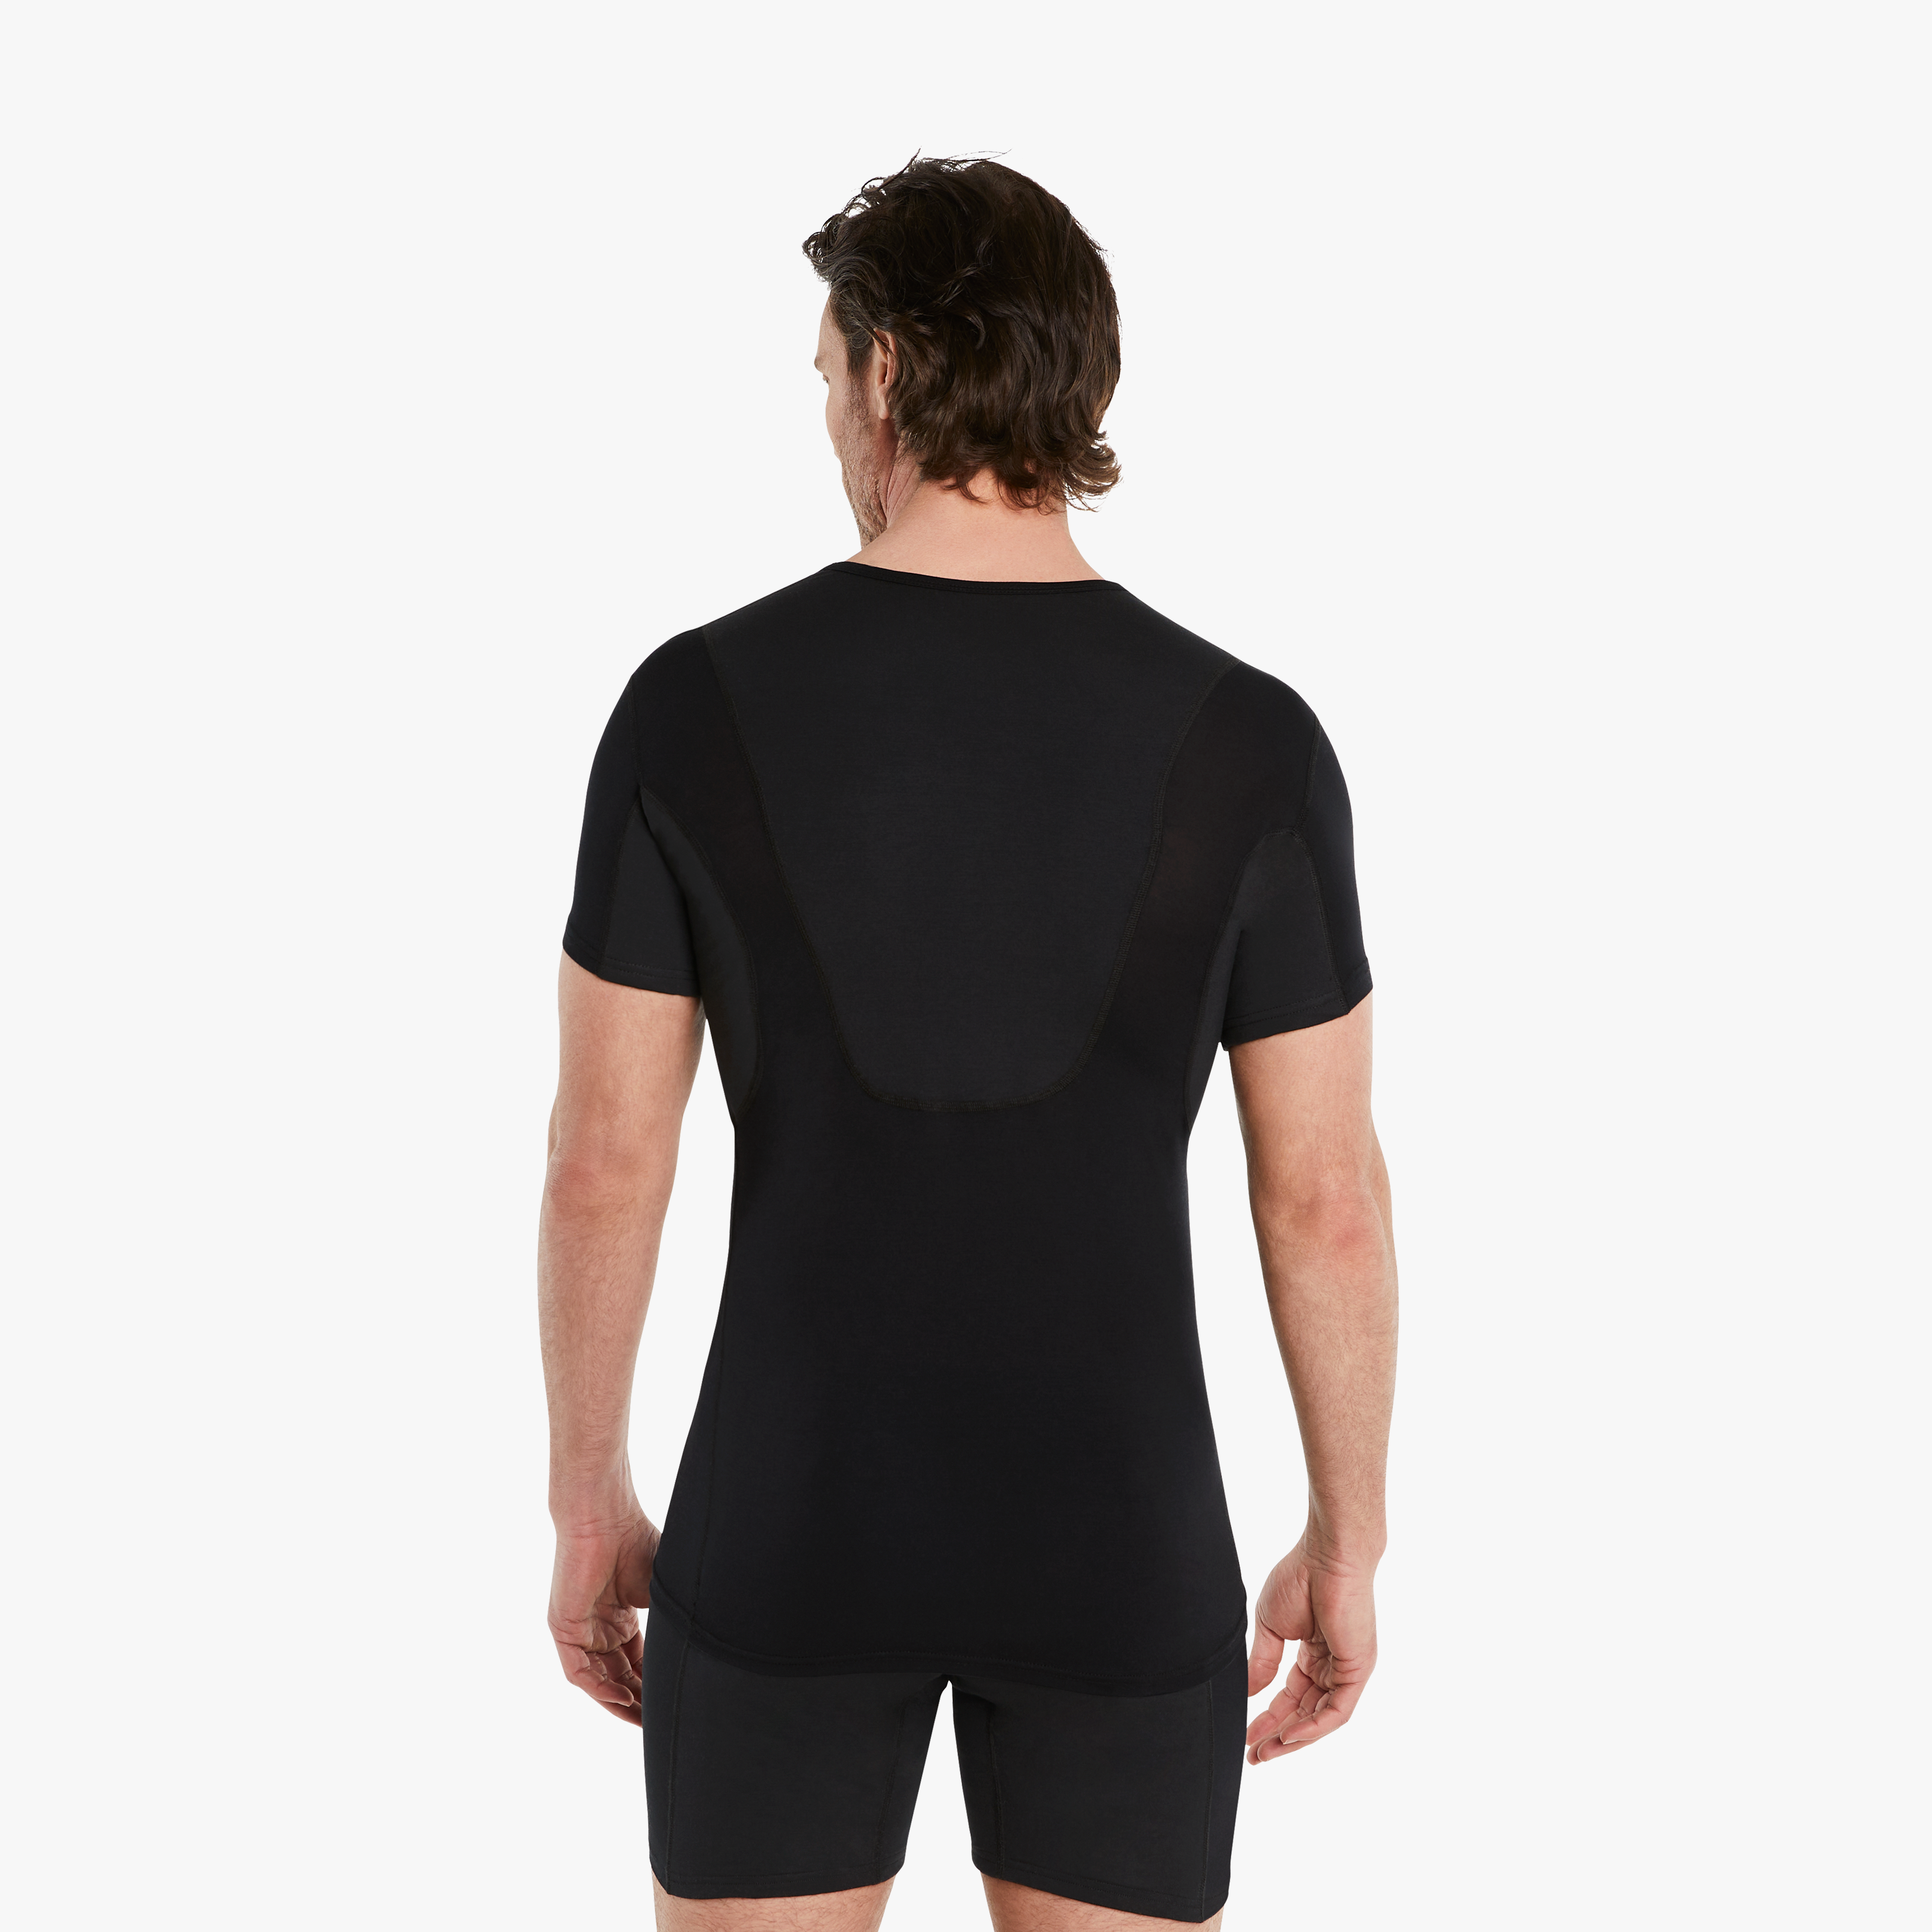 Mann in schwarzen Anti-Schweiß Unterhemd Herren mit Rückeneinlage, Größe M. 100% Schutz vor Schweißflecken, Drywear Shirt mit extra-saugfähiger Schicht. #farbe_schwarz